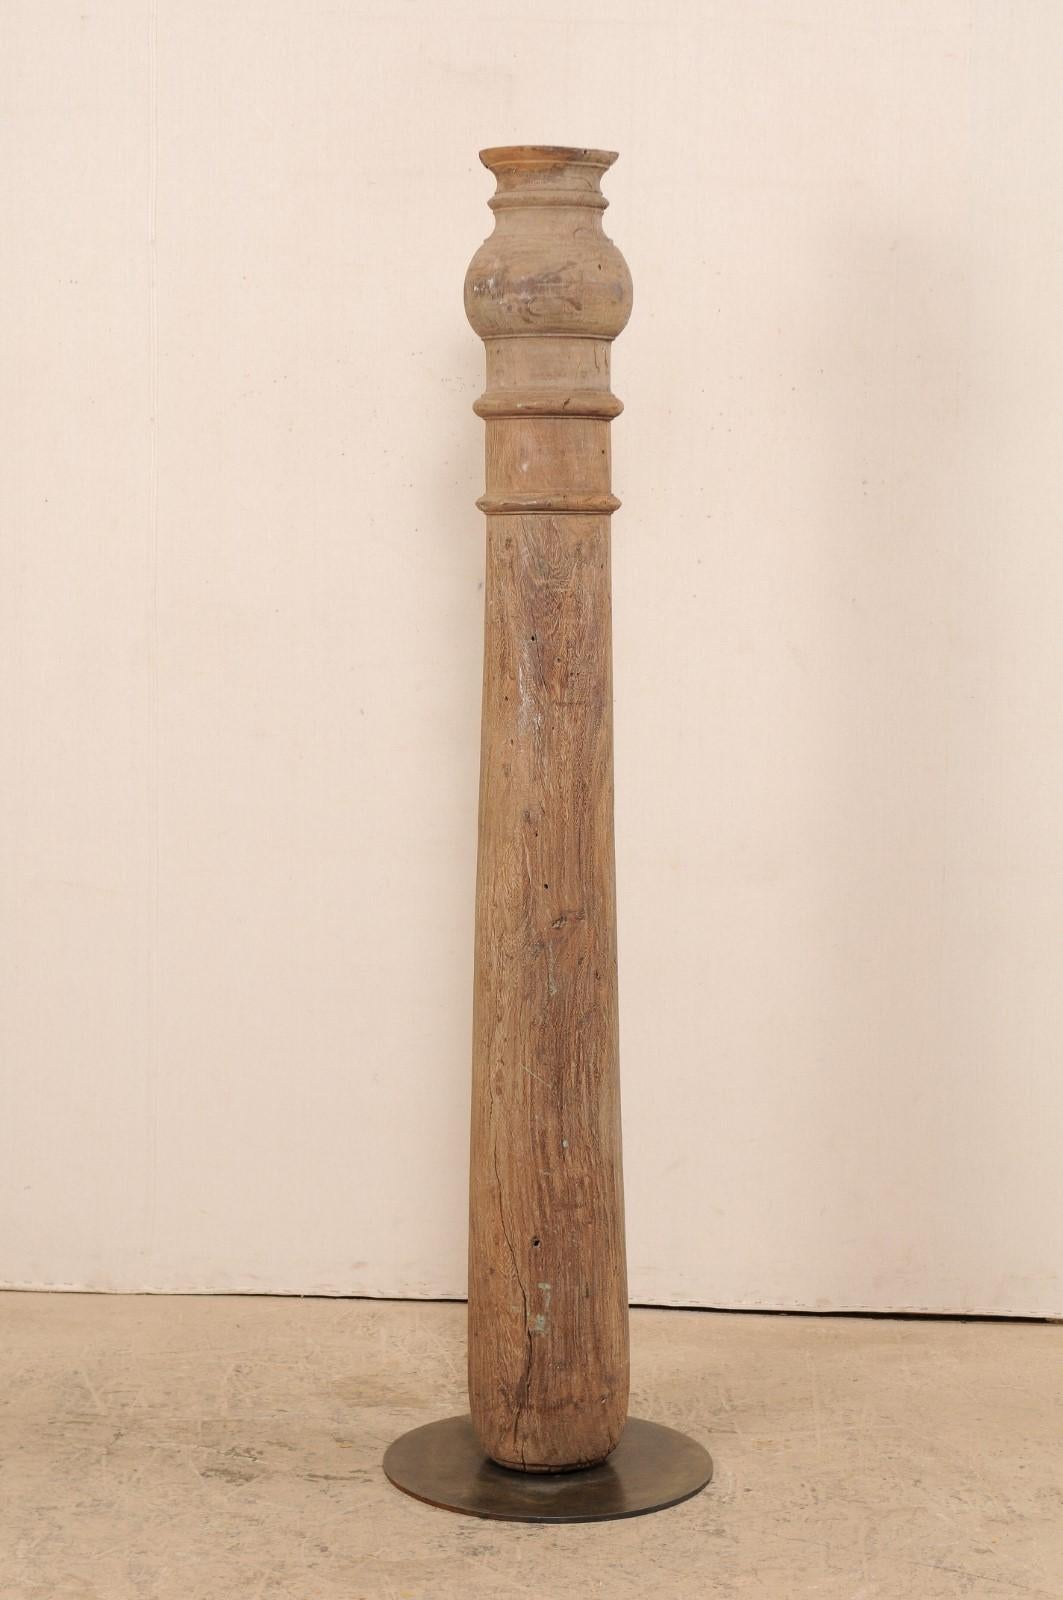 Eine einzelne geschnitzte Holzsäule aus dem 19. Jahrhundert im britischen Kolonialstil mit individuellem Ständer. Dieses antike handgeschnitzte hölzerne Architekturelement aus Indien, das knapp 6,5 Fuß hoch ist, besteht aus einer schlanken,